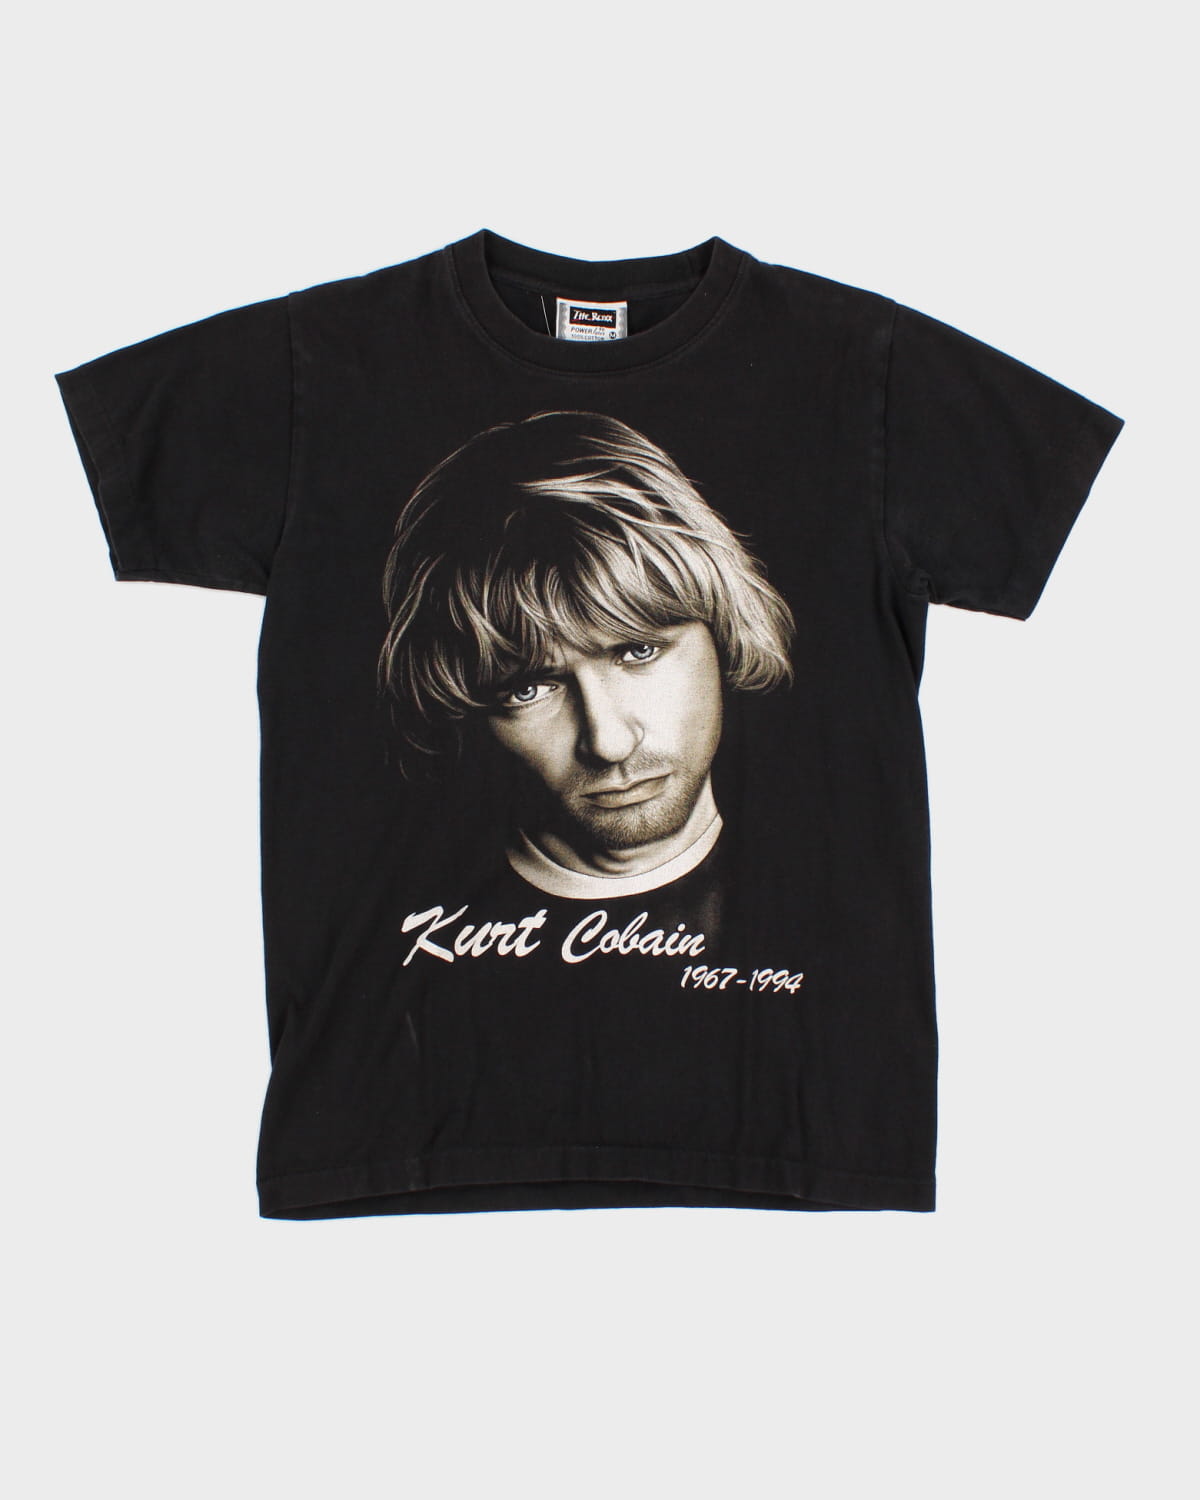 90's Kurt Cobain Graphic T-Shirt - M